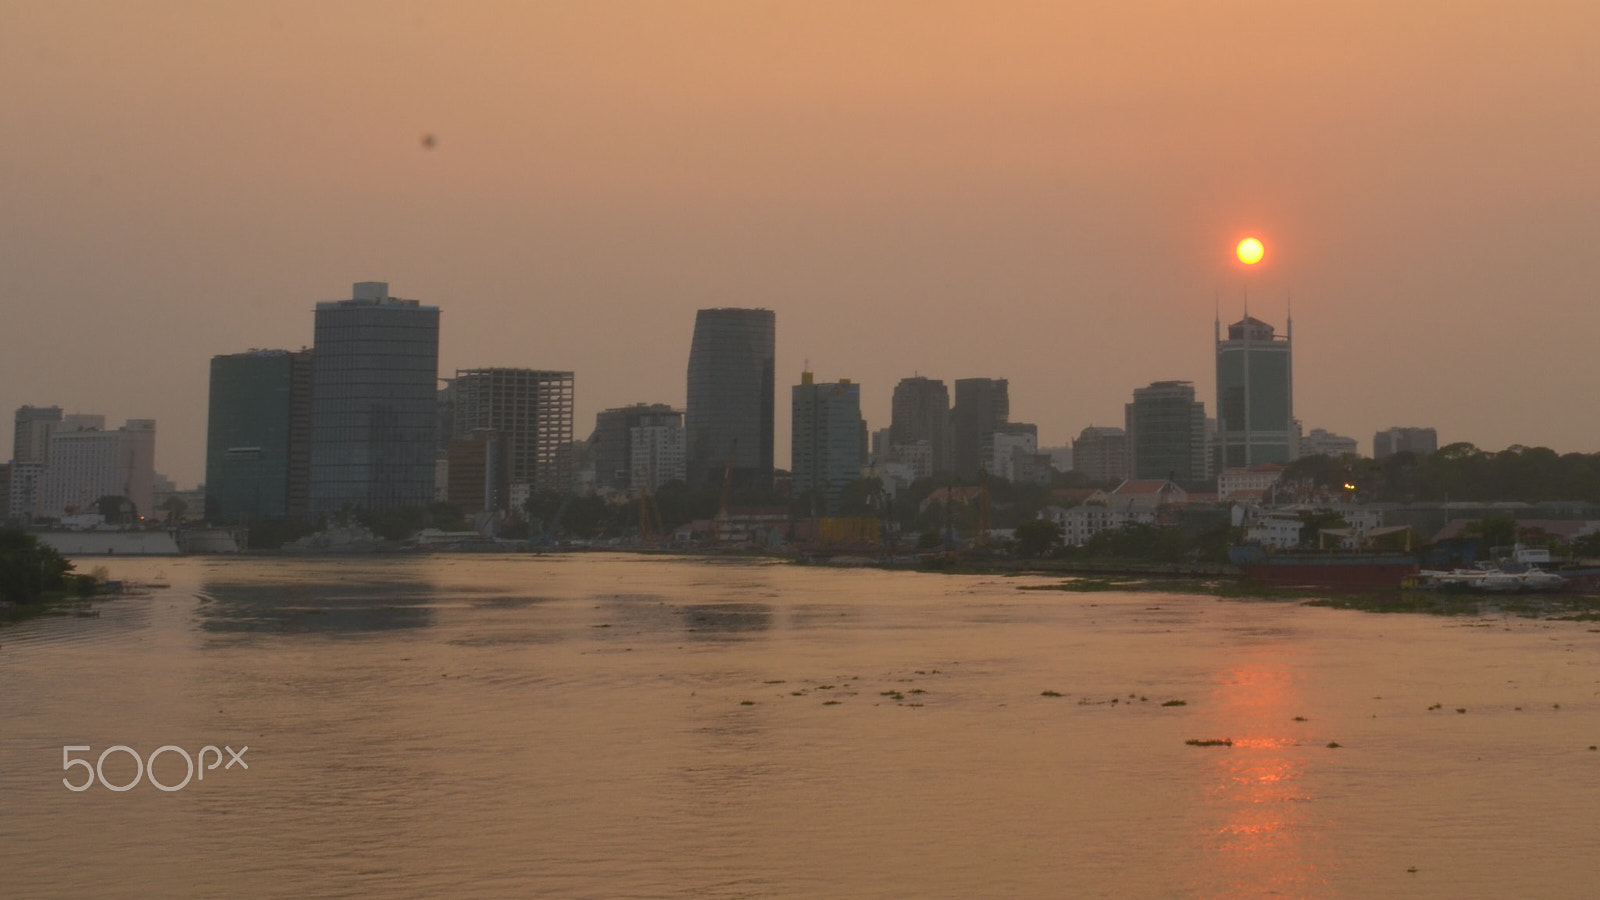 Nikon AF Nikkor 24mm F2.8D sample photo. Saigon's river photography